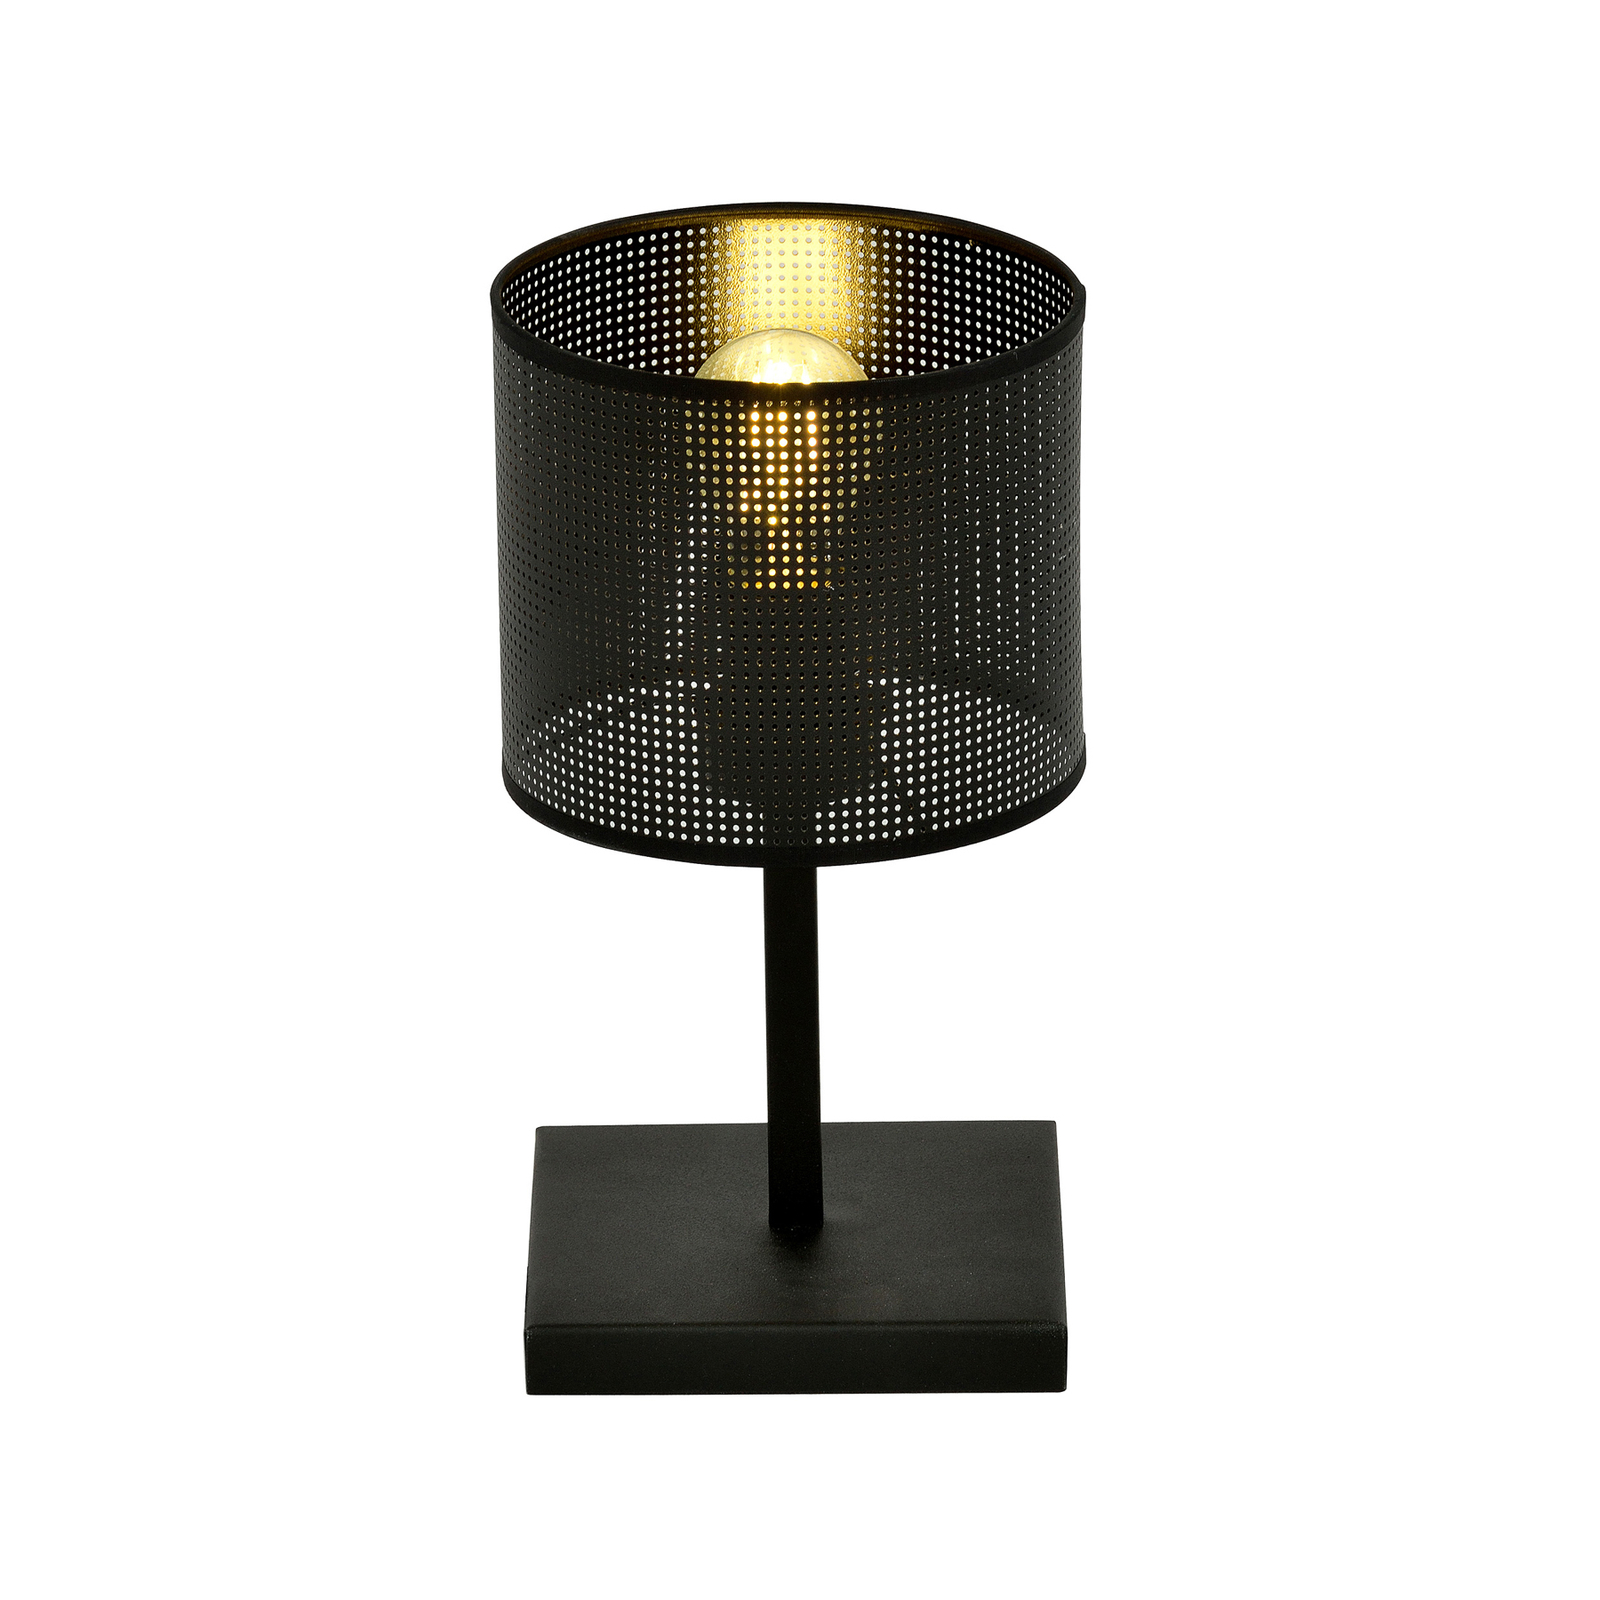 Bordslampa Jordan, svart, 1 lampa